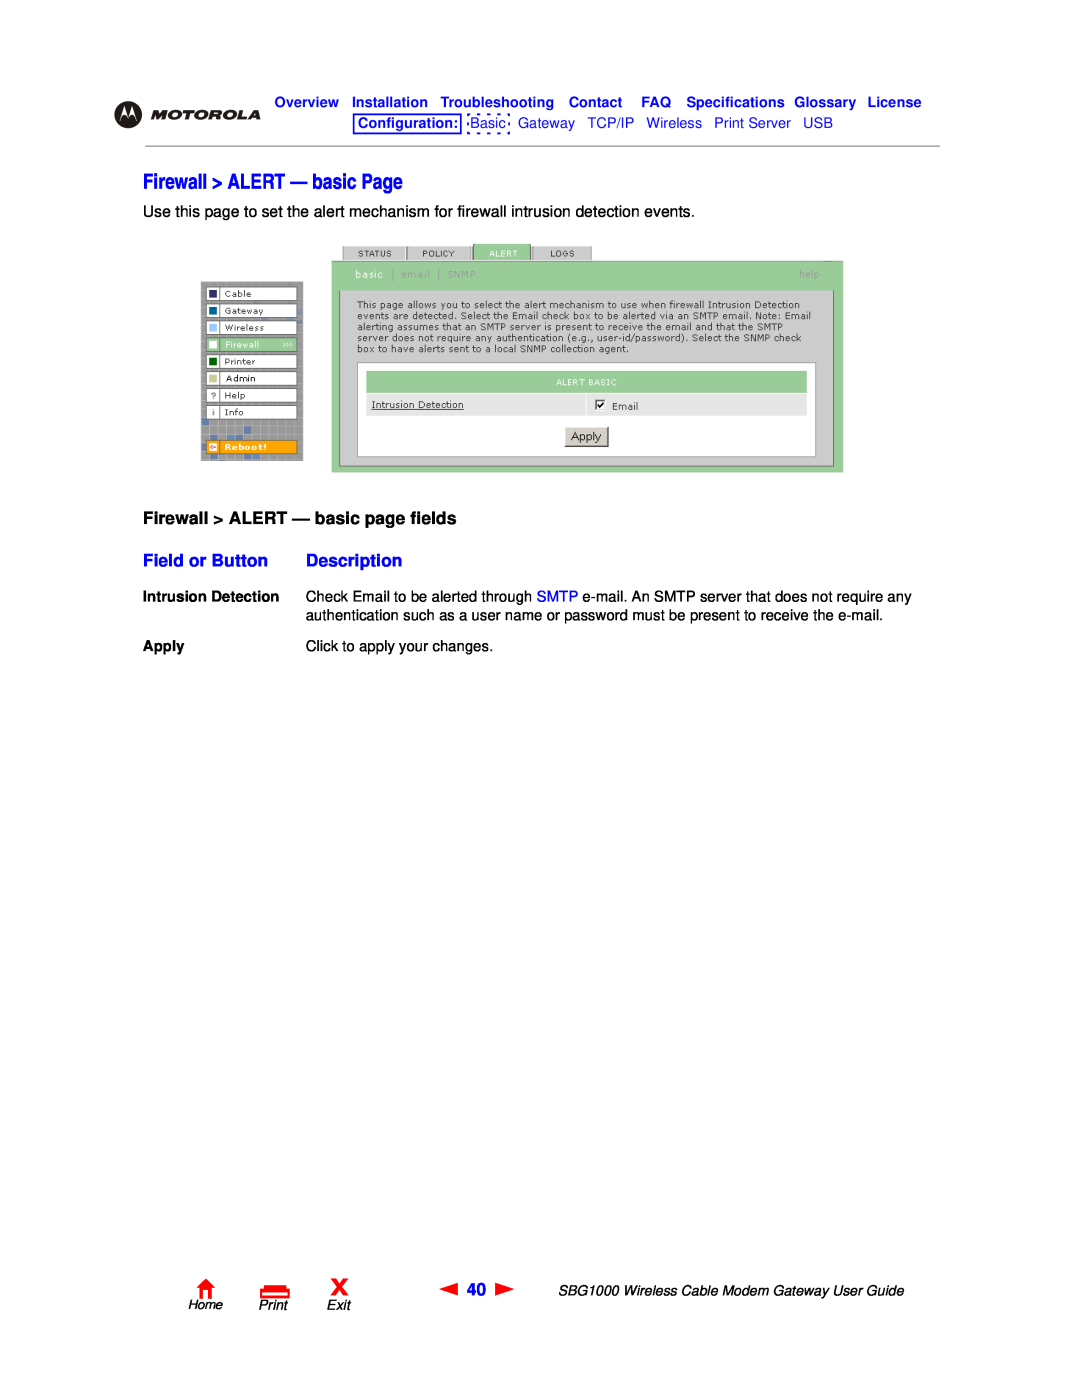 Motorola SBG1000 manual Firewall ALERT - basic Page, Firewall ALERT - basic page fields, Field or Button, Description 